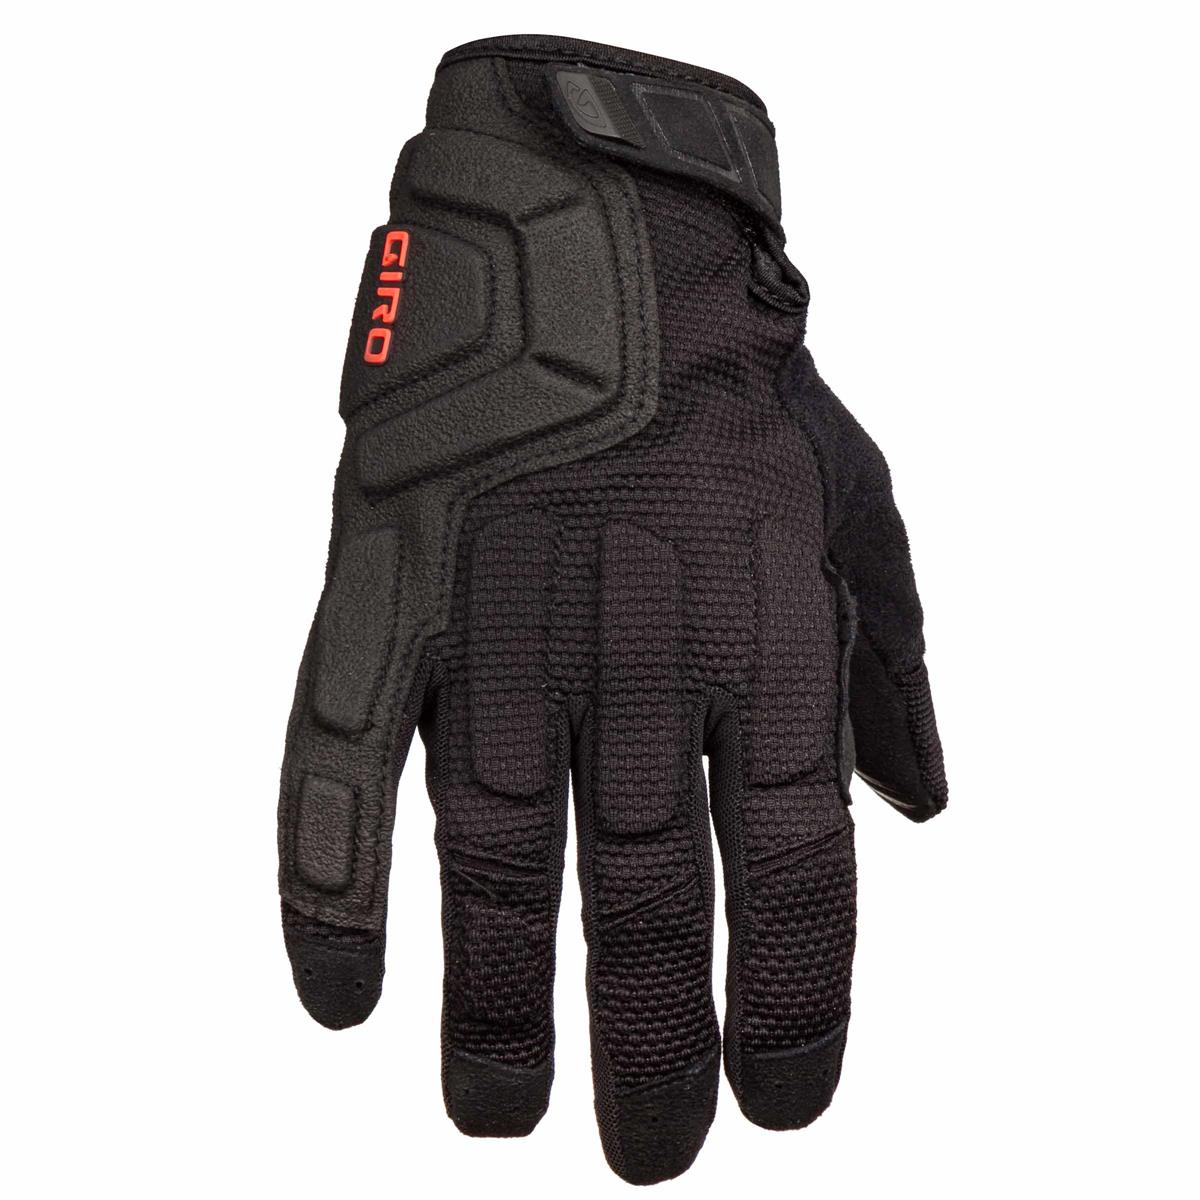 Black Giro Remedy Cycling Gloves Full Finger X2 MTB Cycling Gloves 2017 S 